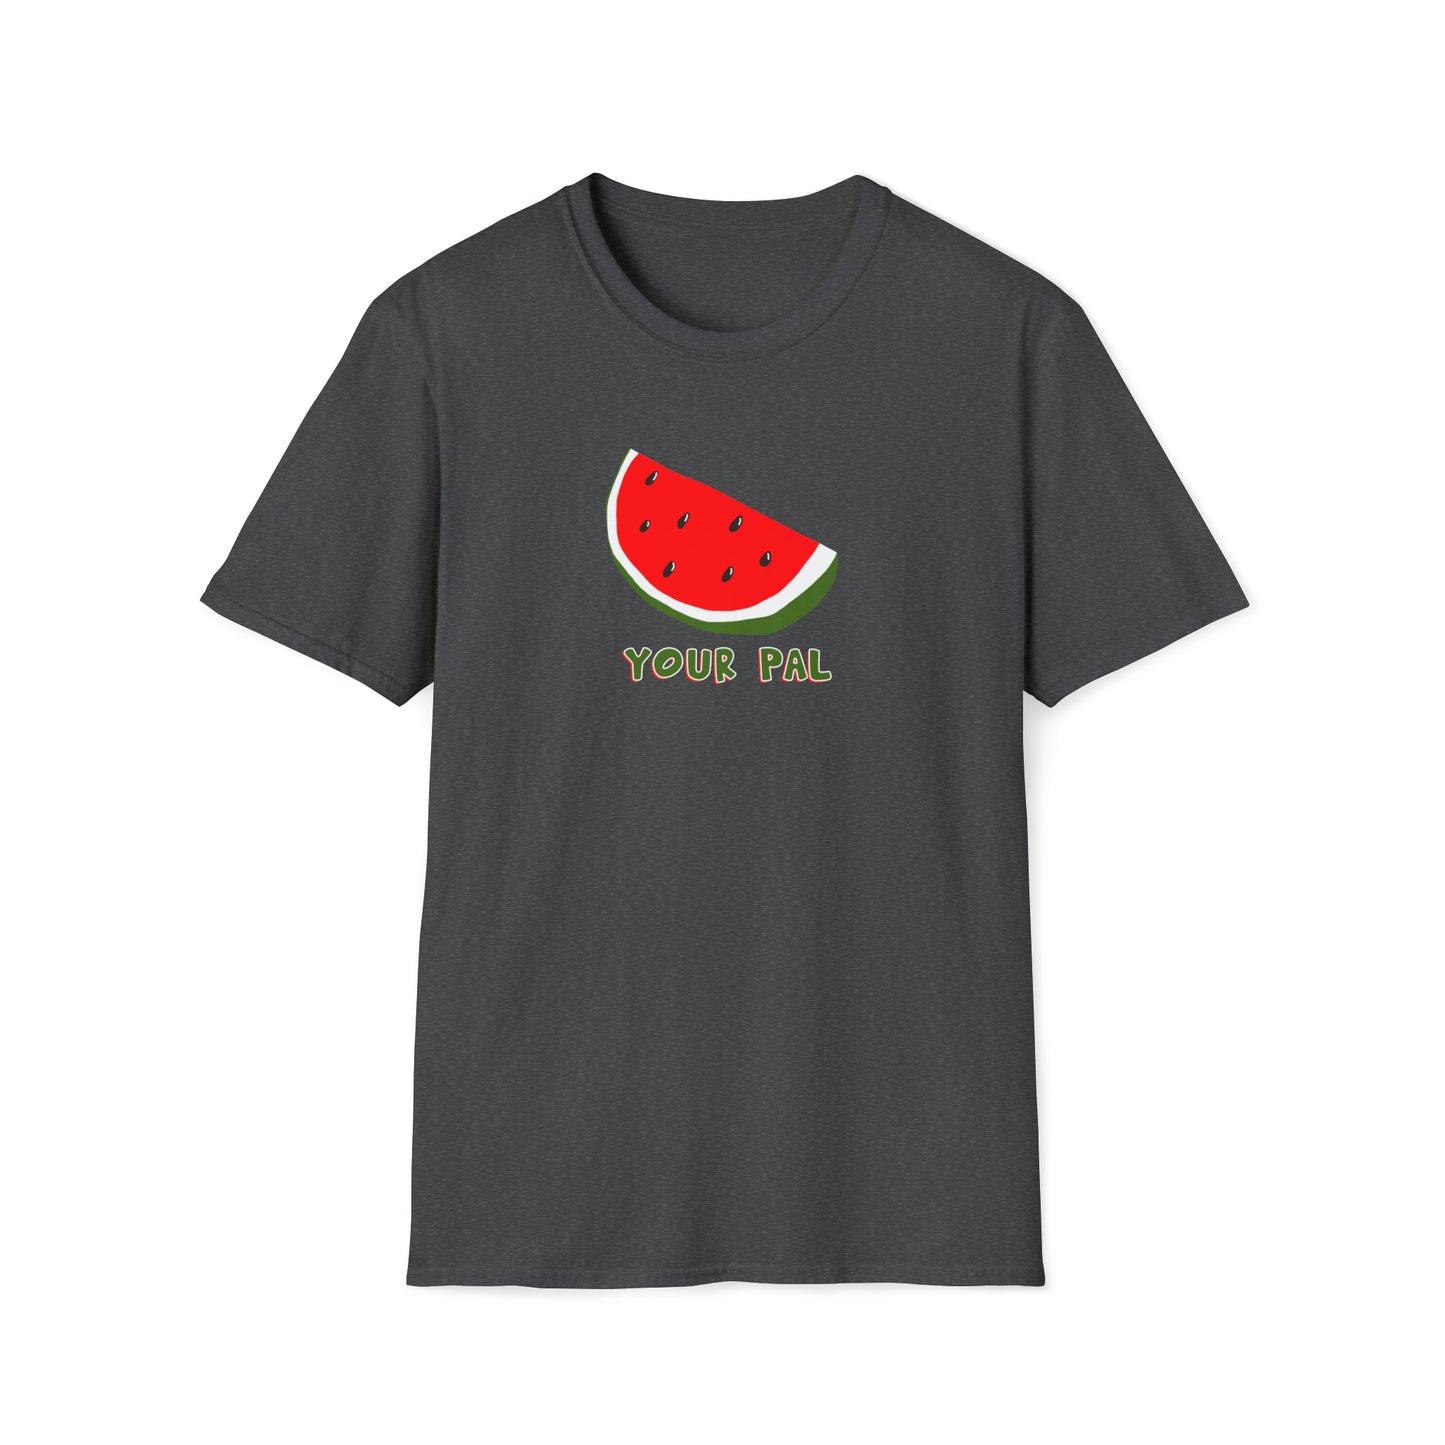 Watermelon Your Pal Shirt - Sammy Obeid